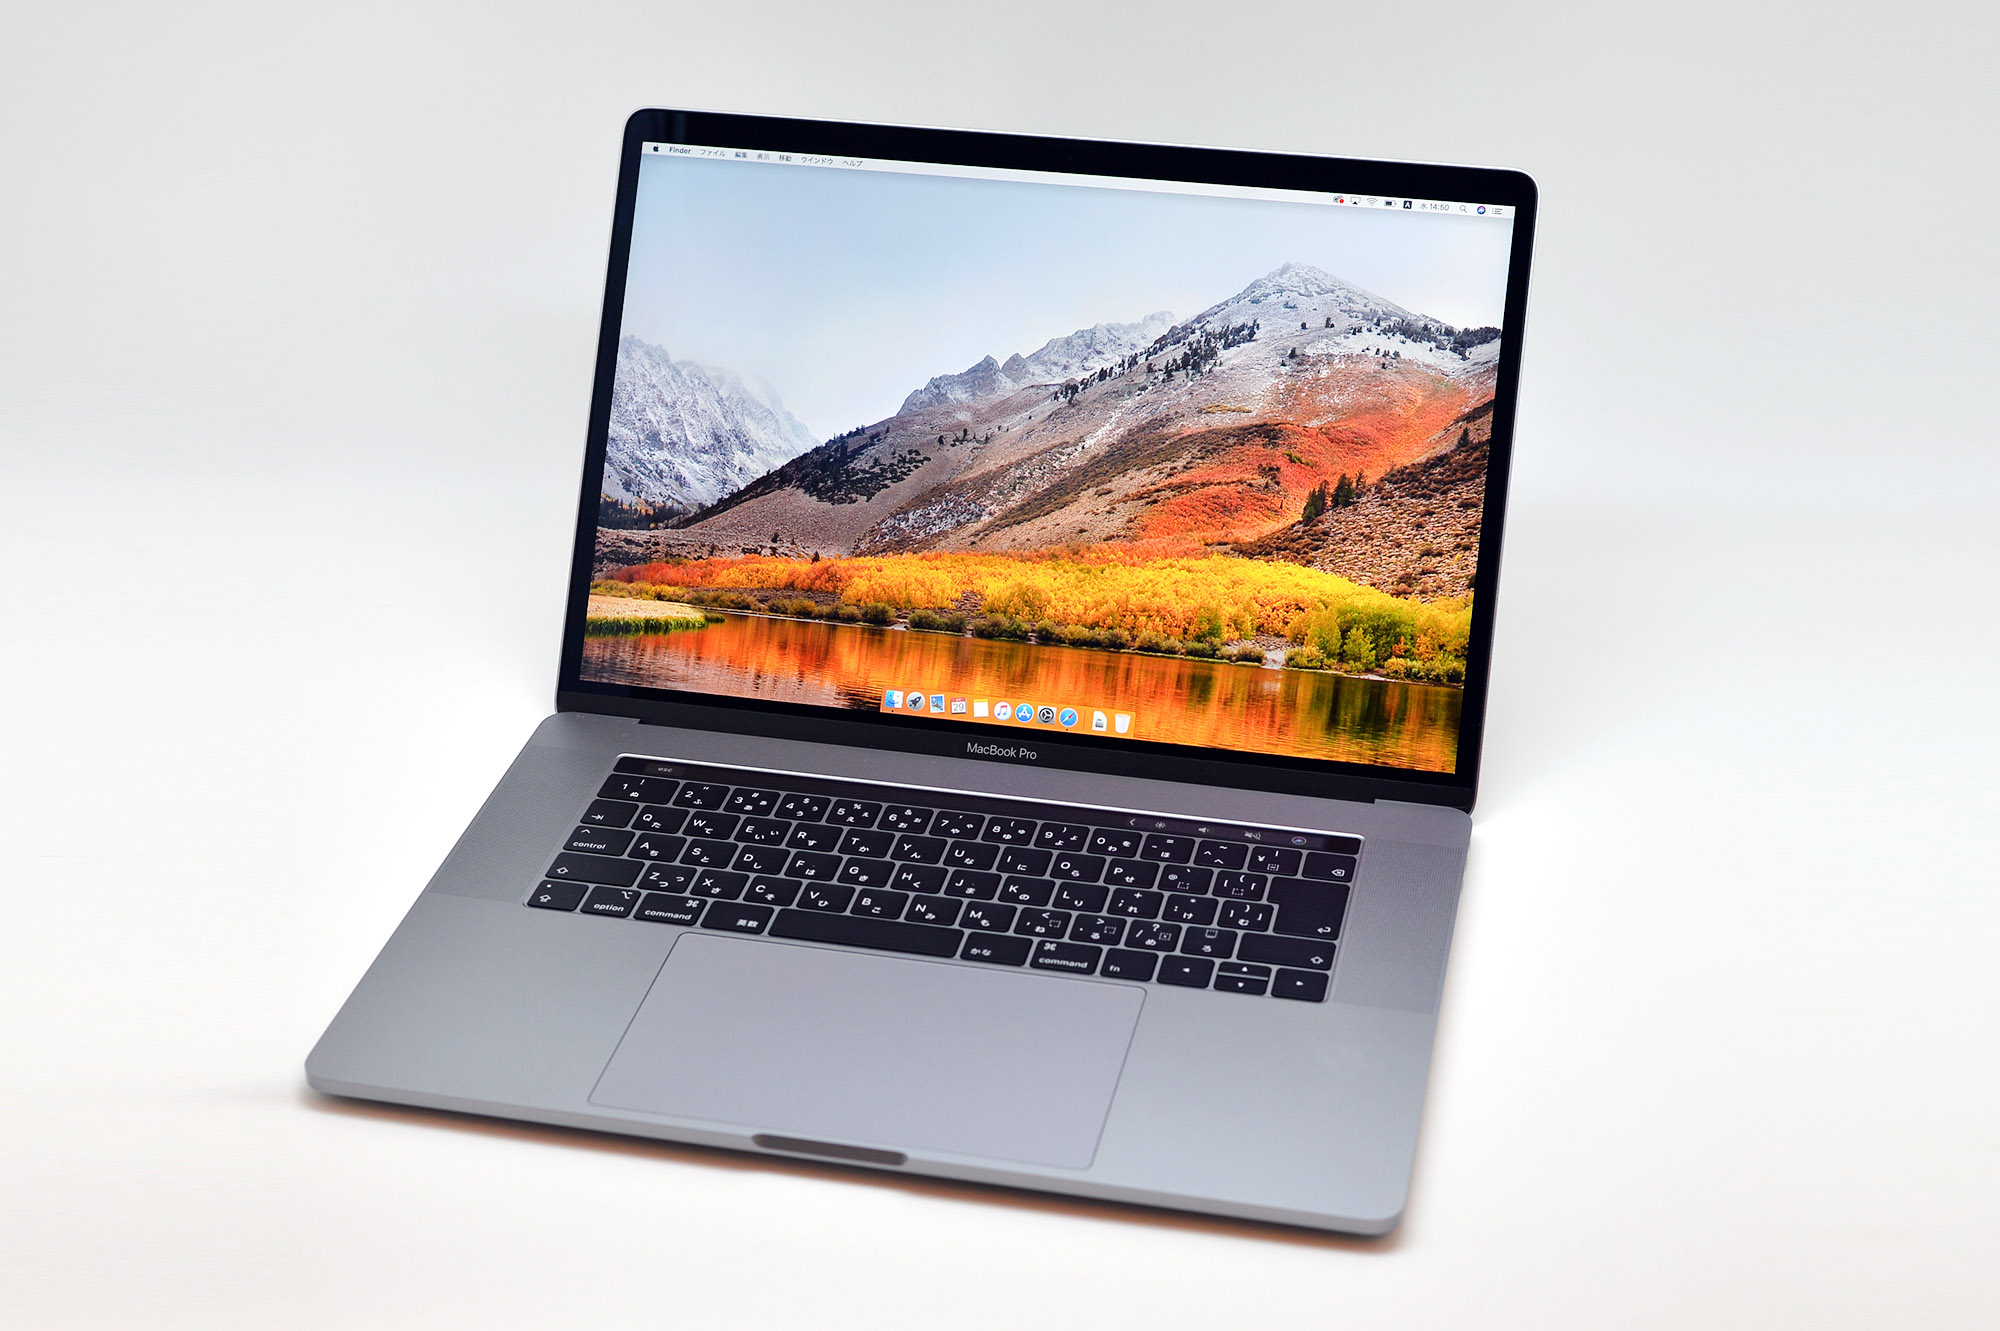 薄型！ノートパソコン MacBook Pro 2015 最新OS